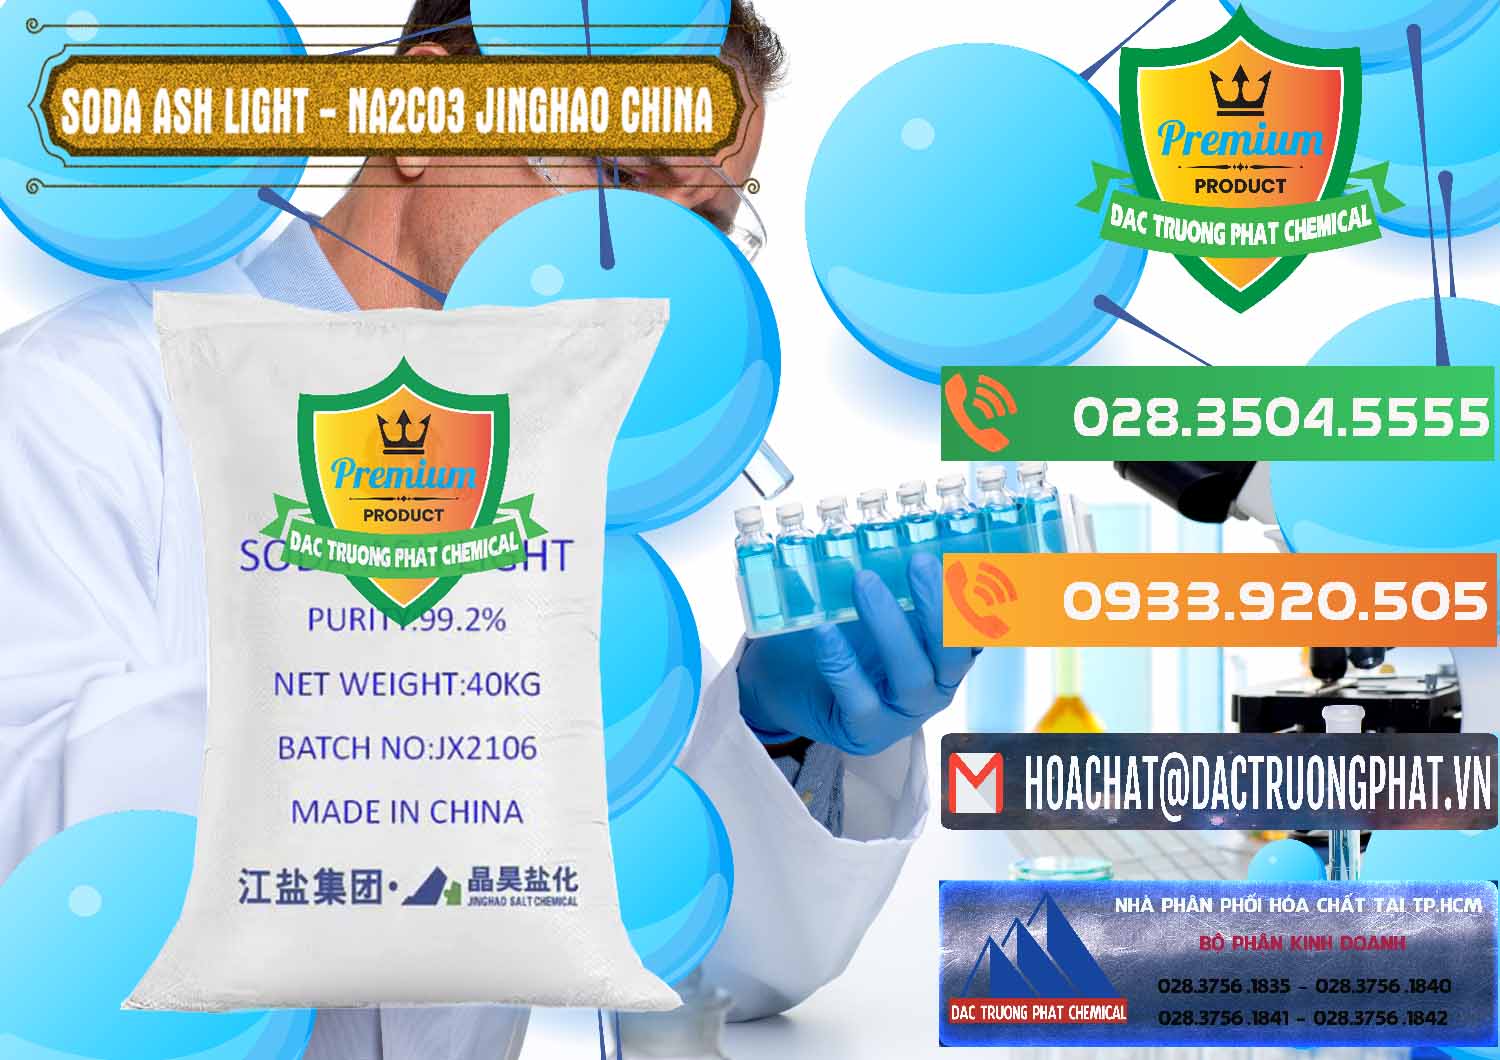 Cty nhập khẩu & bán Soda Ash Light - NA2CO3 Jinghao Trung Quốc China - 0339 - Nơi phân phối và cung cấp hóa chất tại TP.HCM - hoachatxulynuoc.com.vn